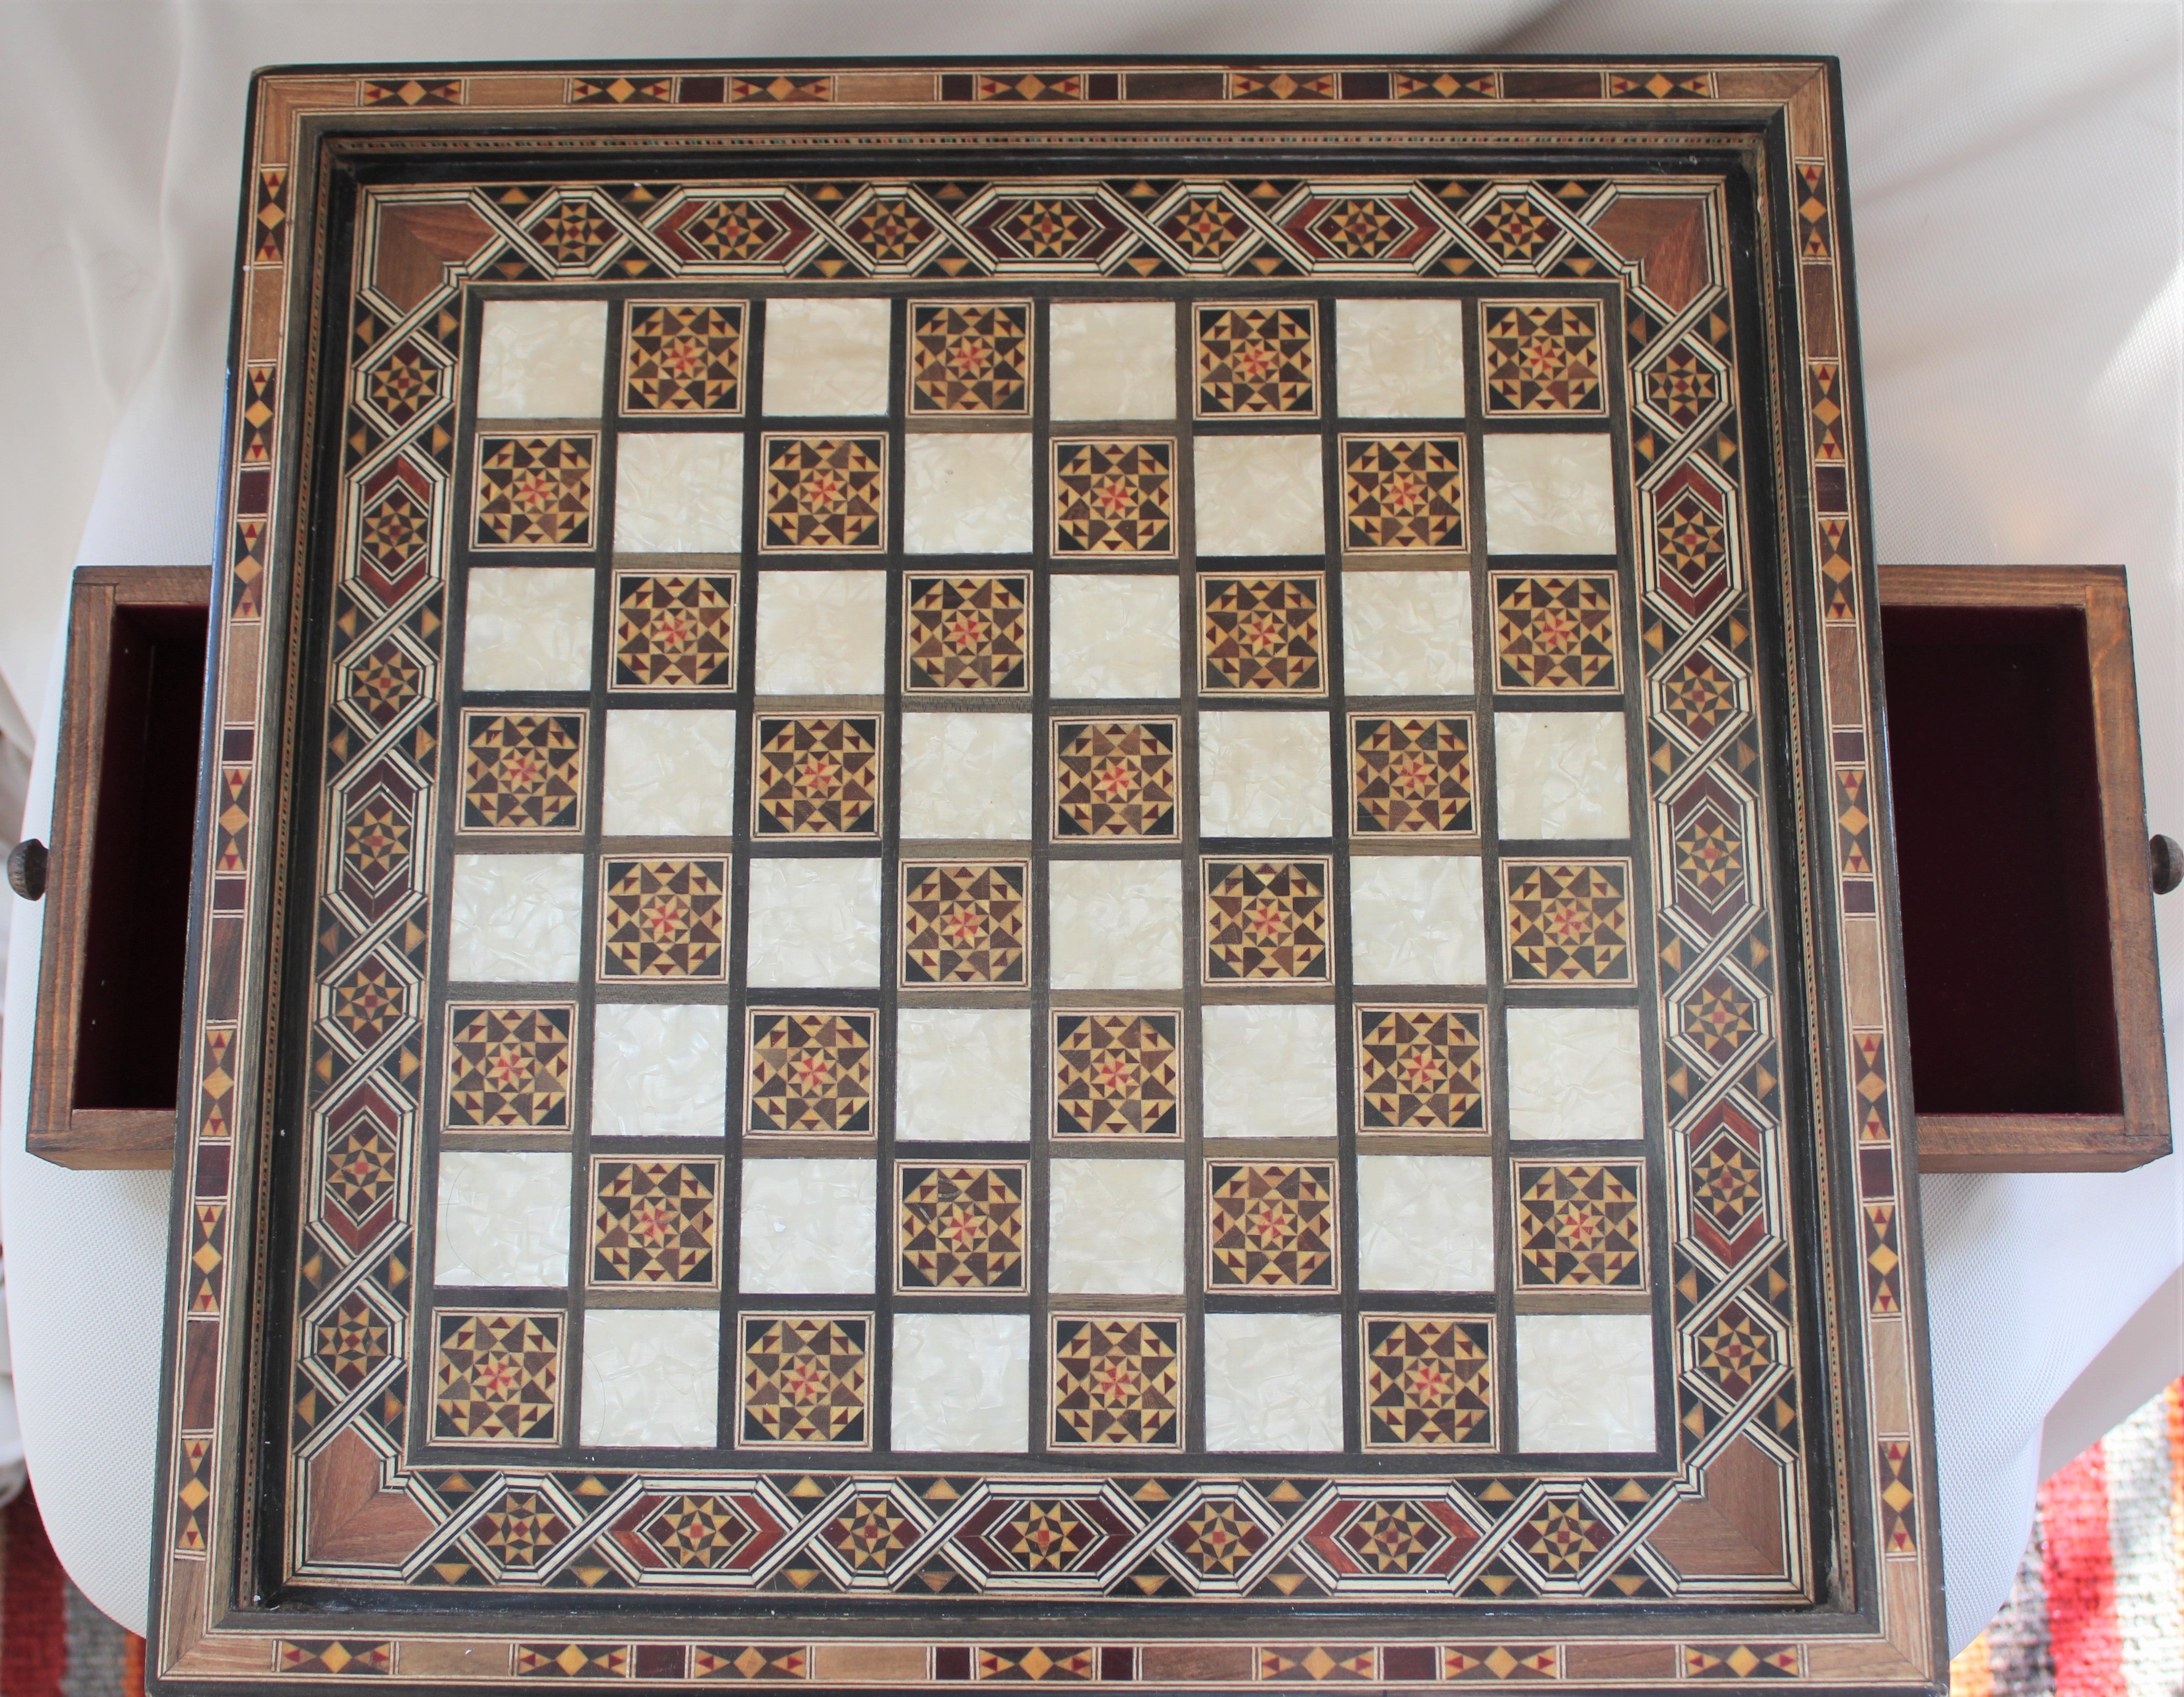 Shah Mosaic Chess Board